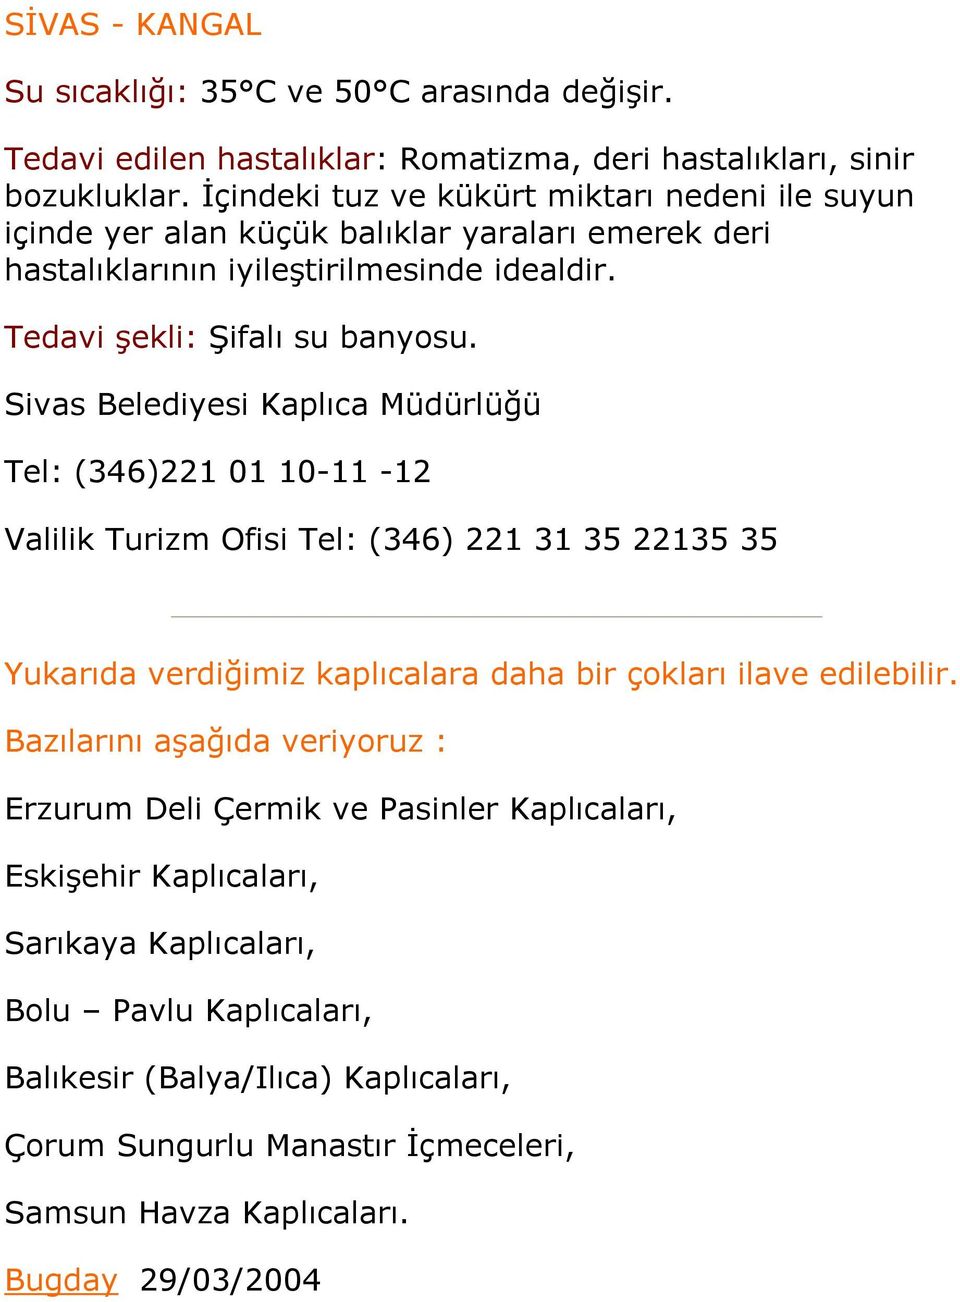 Sivas Belediyesi Kaplıca Müdürlüğü Tel: (346)221 01 10-11 -12 Valilik Turizm Ofisi Tel: (346) 221 31 35 22135 35 Yukarıda verdiğimiz kaplıcalara daha bir çokları ilave edilebilir.